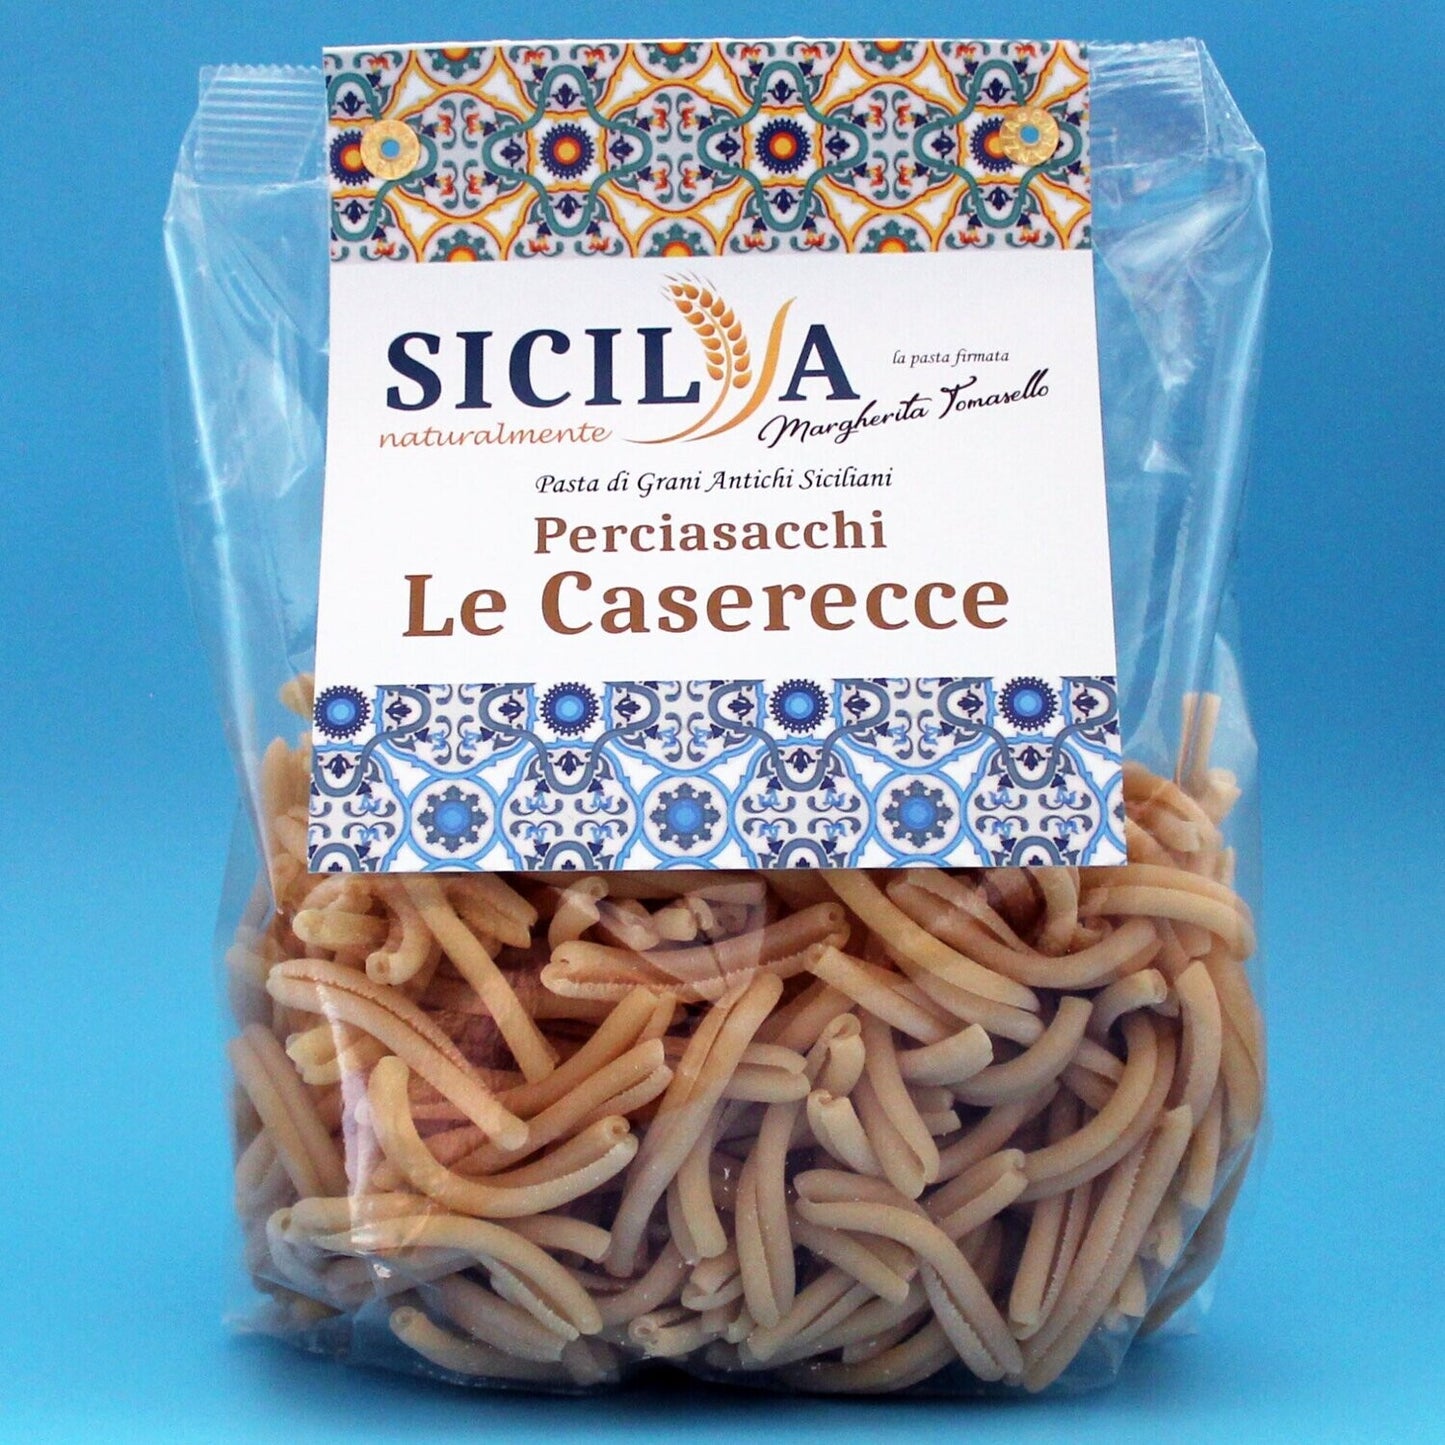 Pasta Caserecce di Grani Antichi Siciliani Perciasacchi - Sicilia Naturalmente